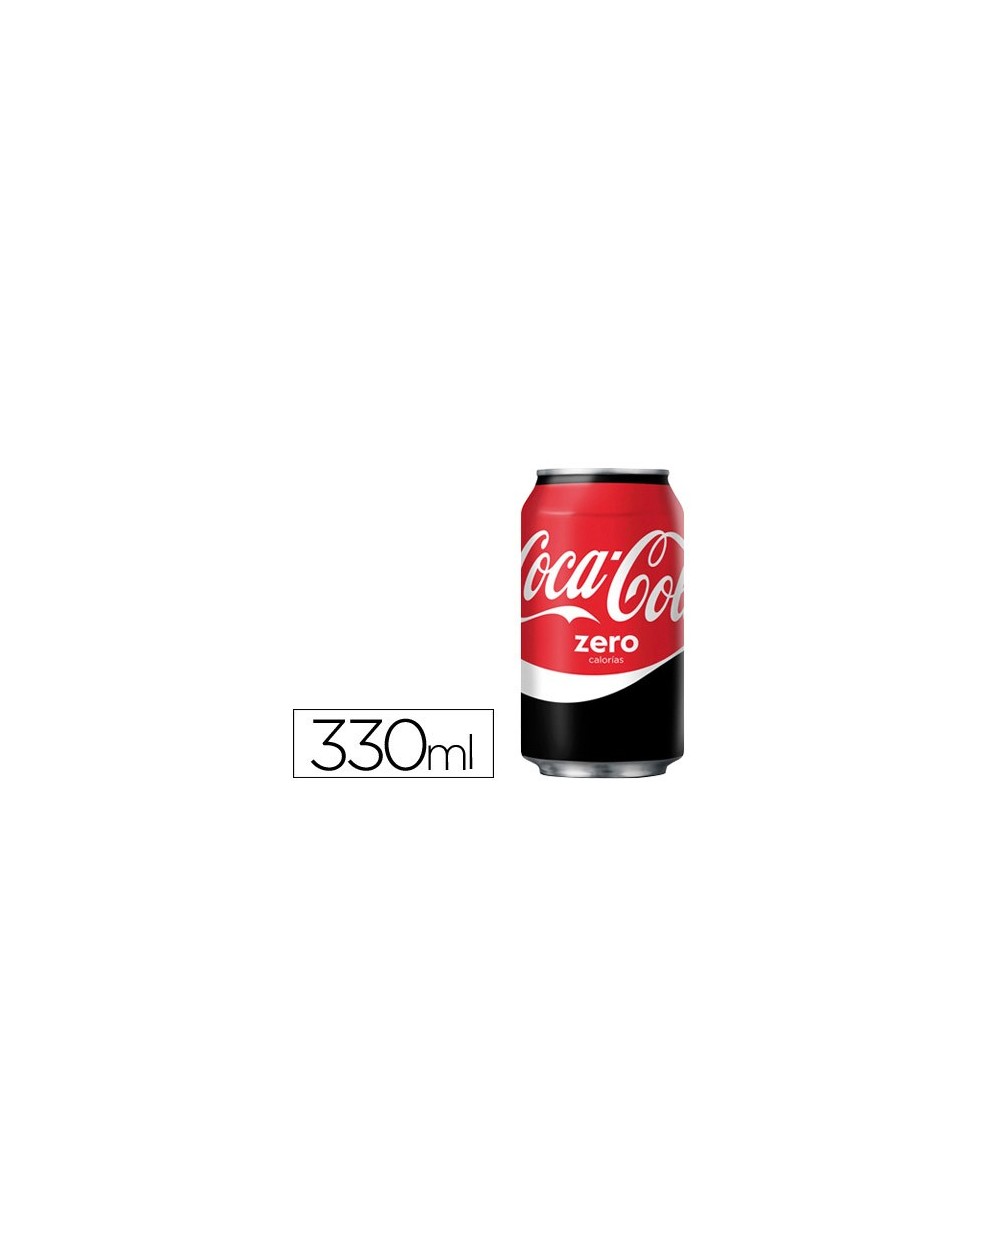 Refresco coca cola zero lata 330 ml